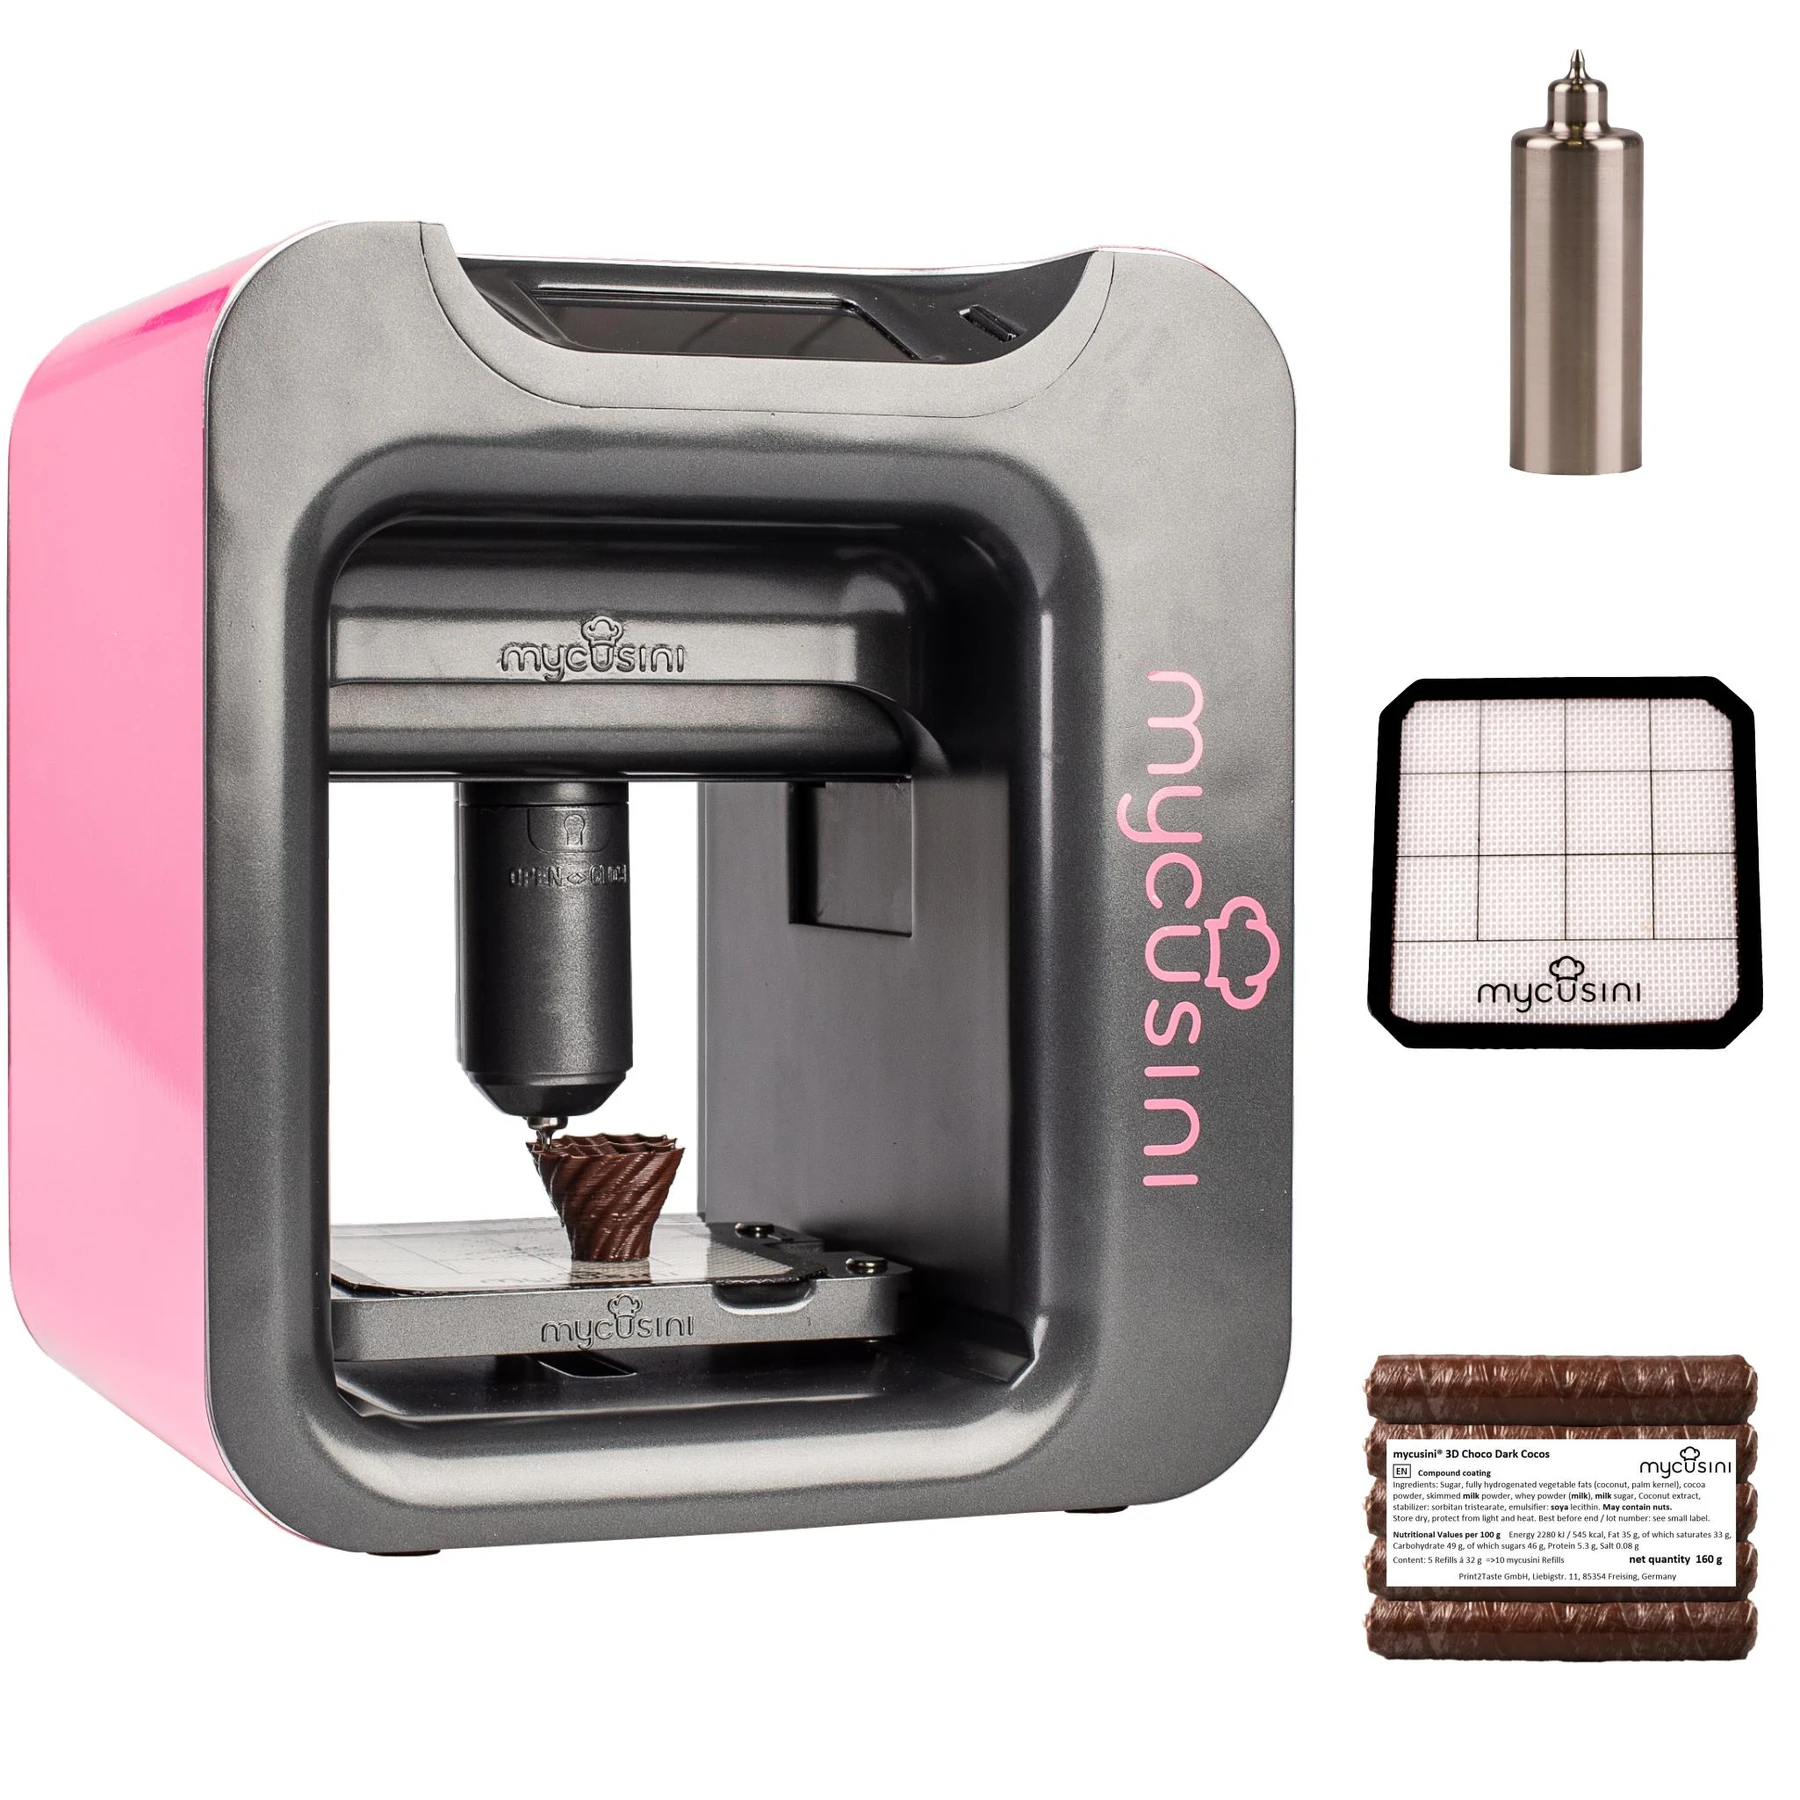 mycusini 2.0 chokolade 3D pink - Chokolade 3D printer og tilbehør - Gadgethuset.dk